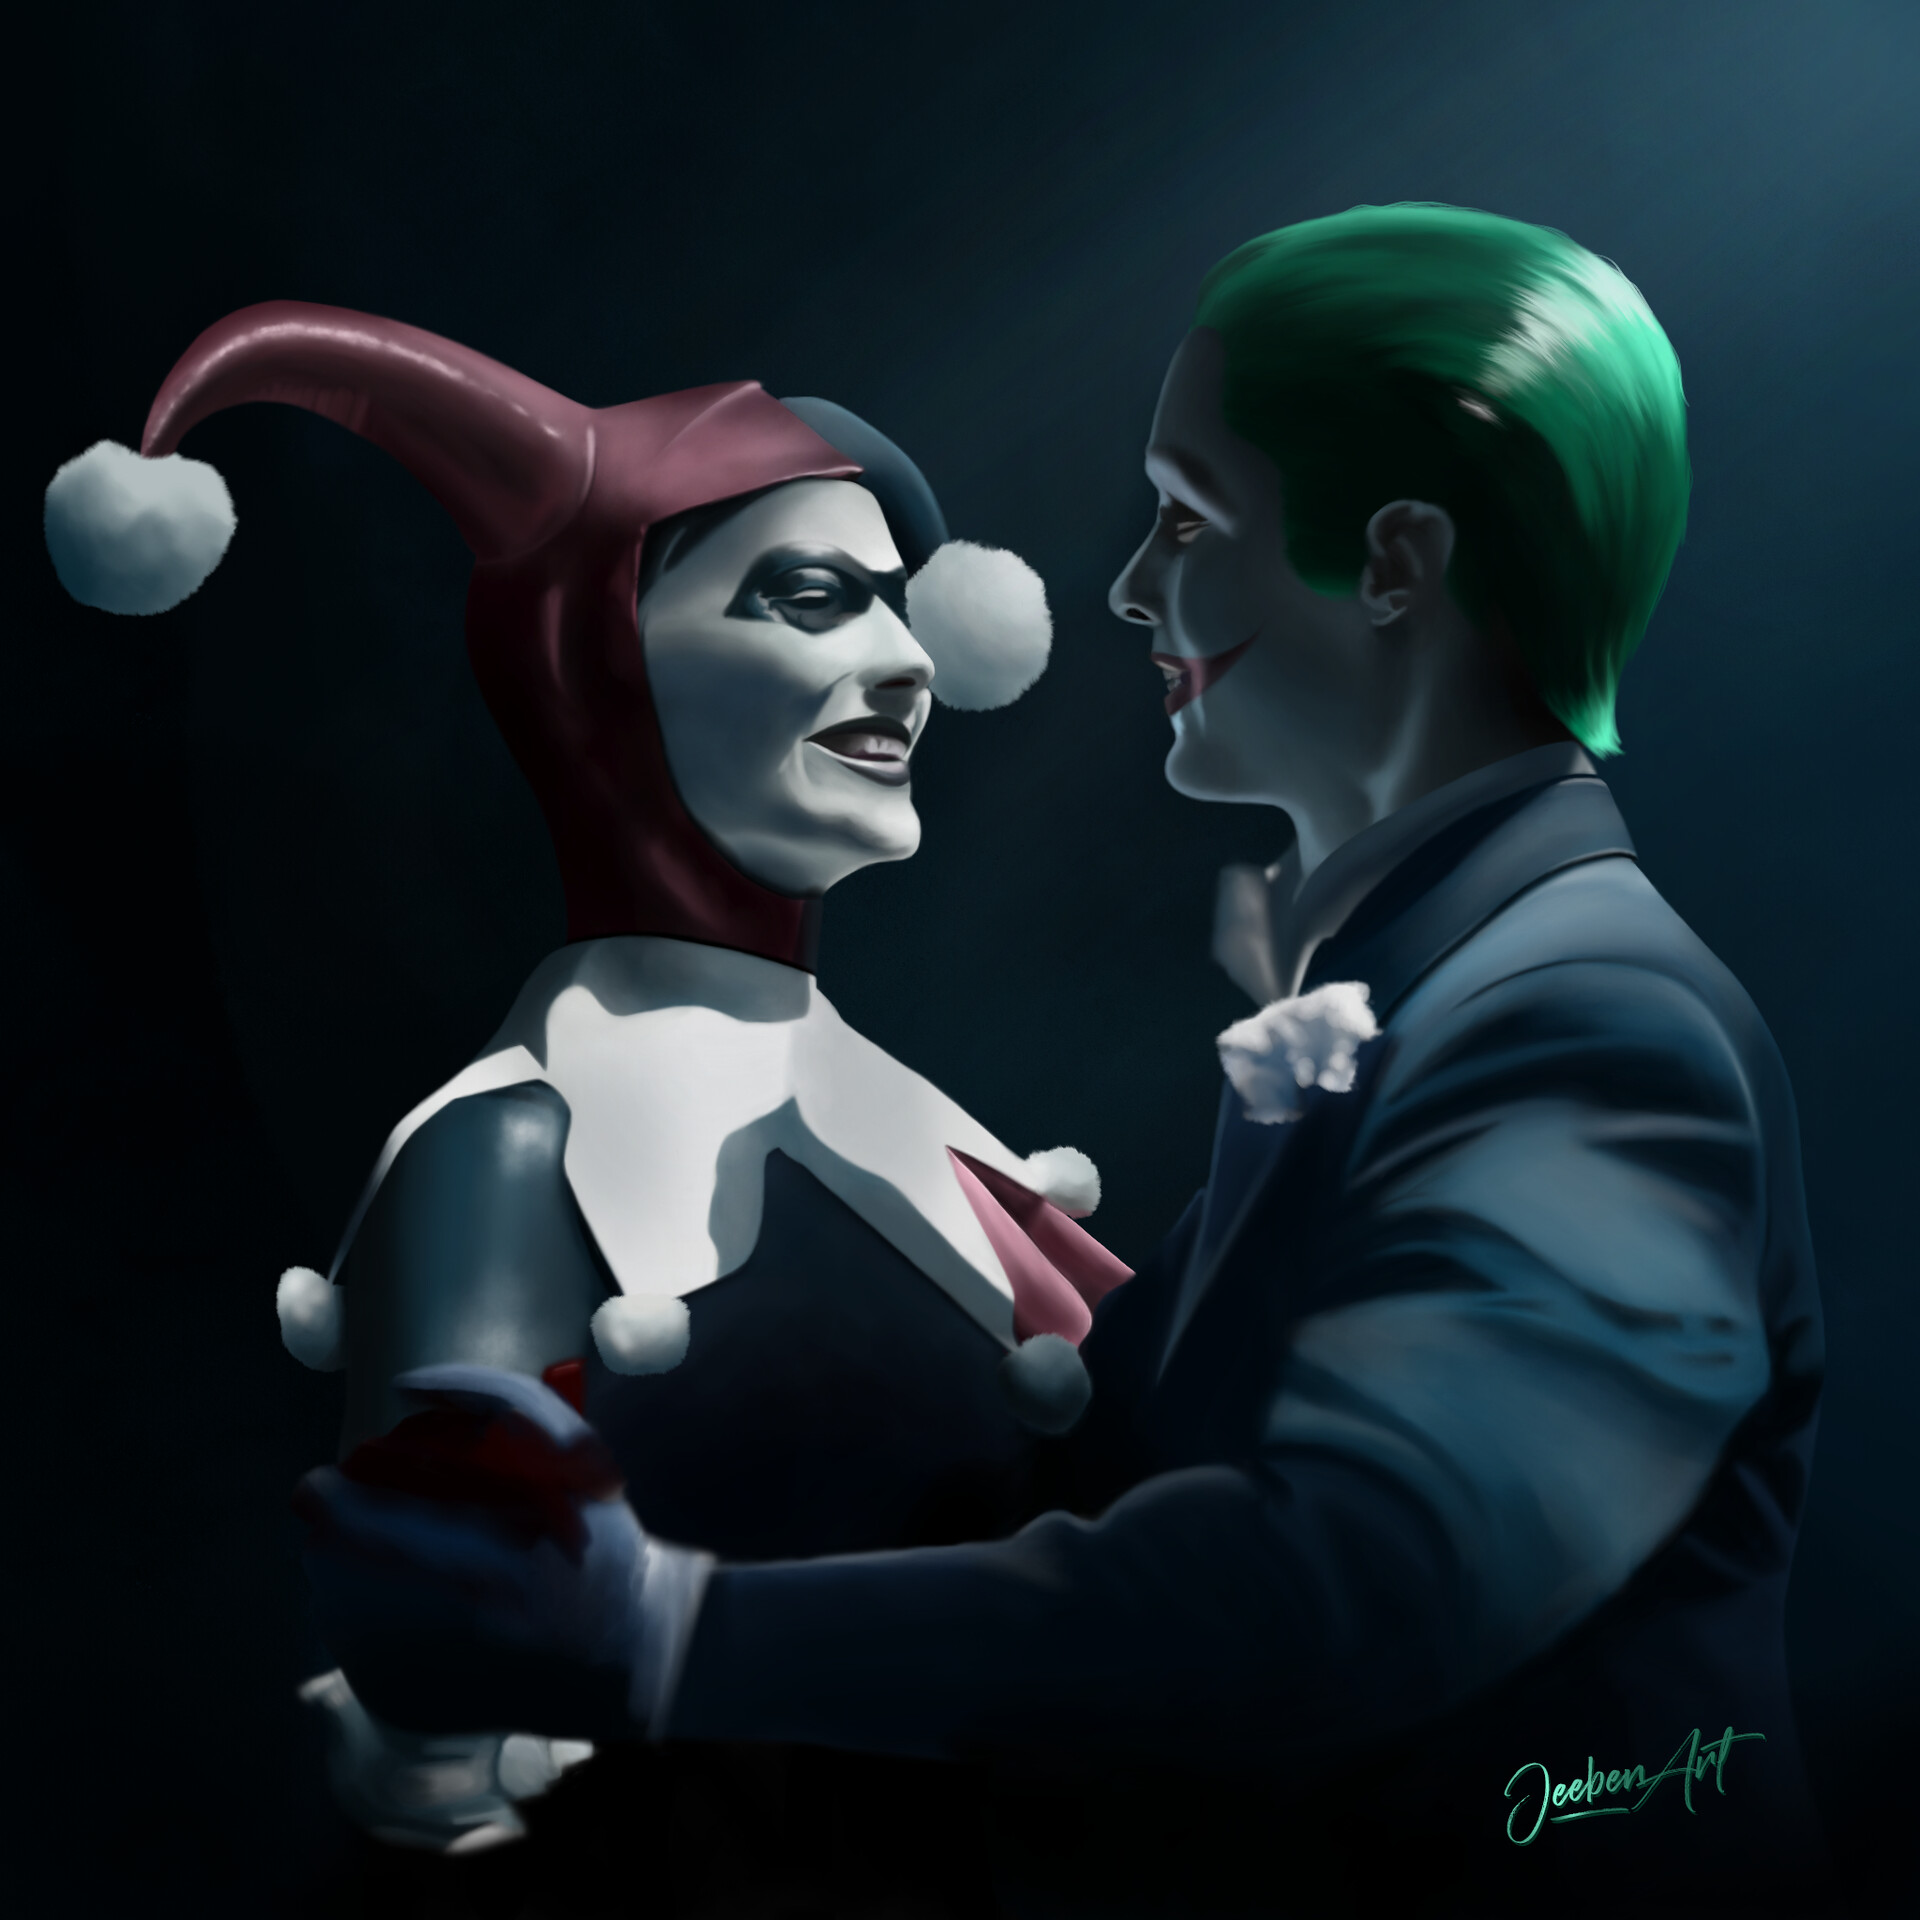 Joker and harley quinn